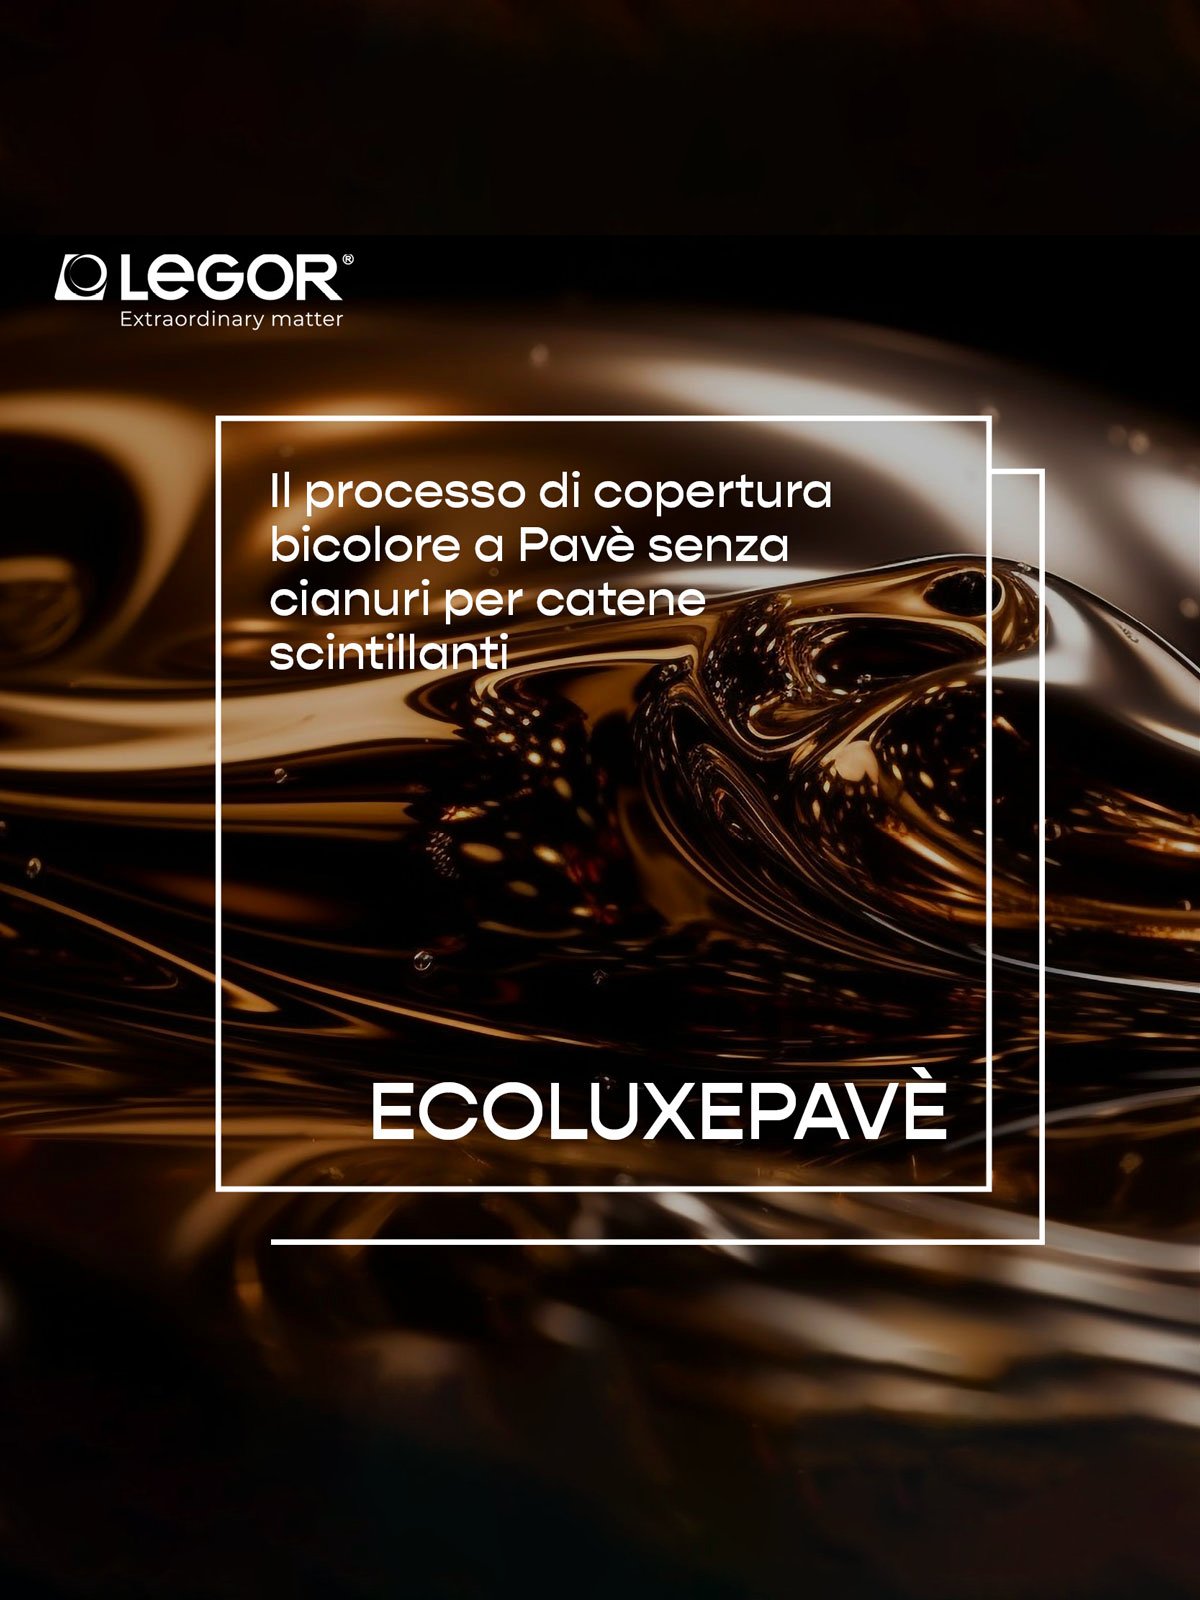 Ecoluxepavé: è senza cianuri il nuovo processo di copertura di Legor